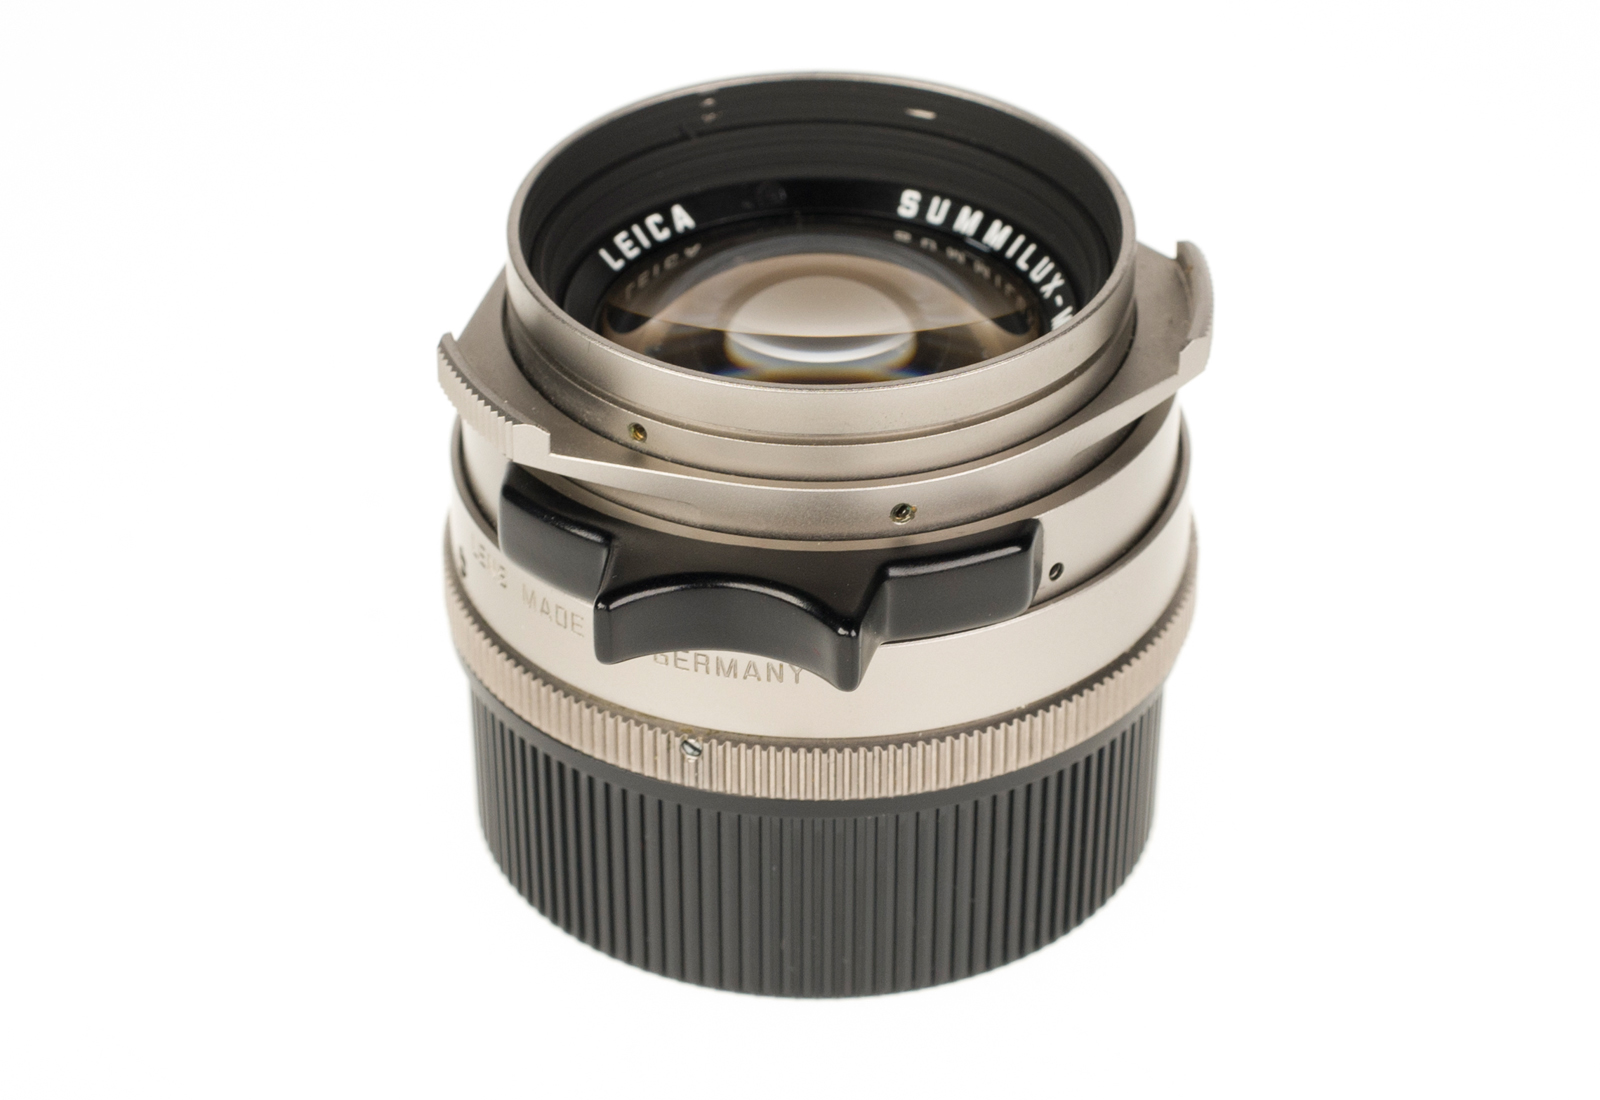 Leica M6 Titan 10412 Set